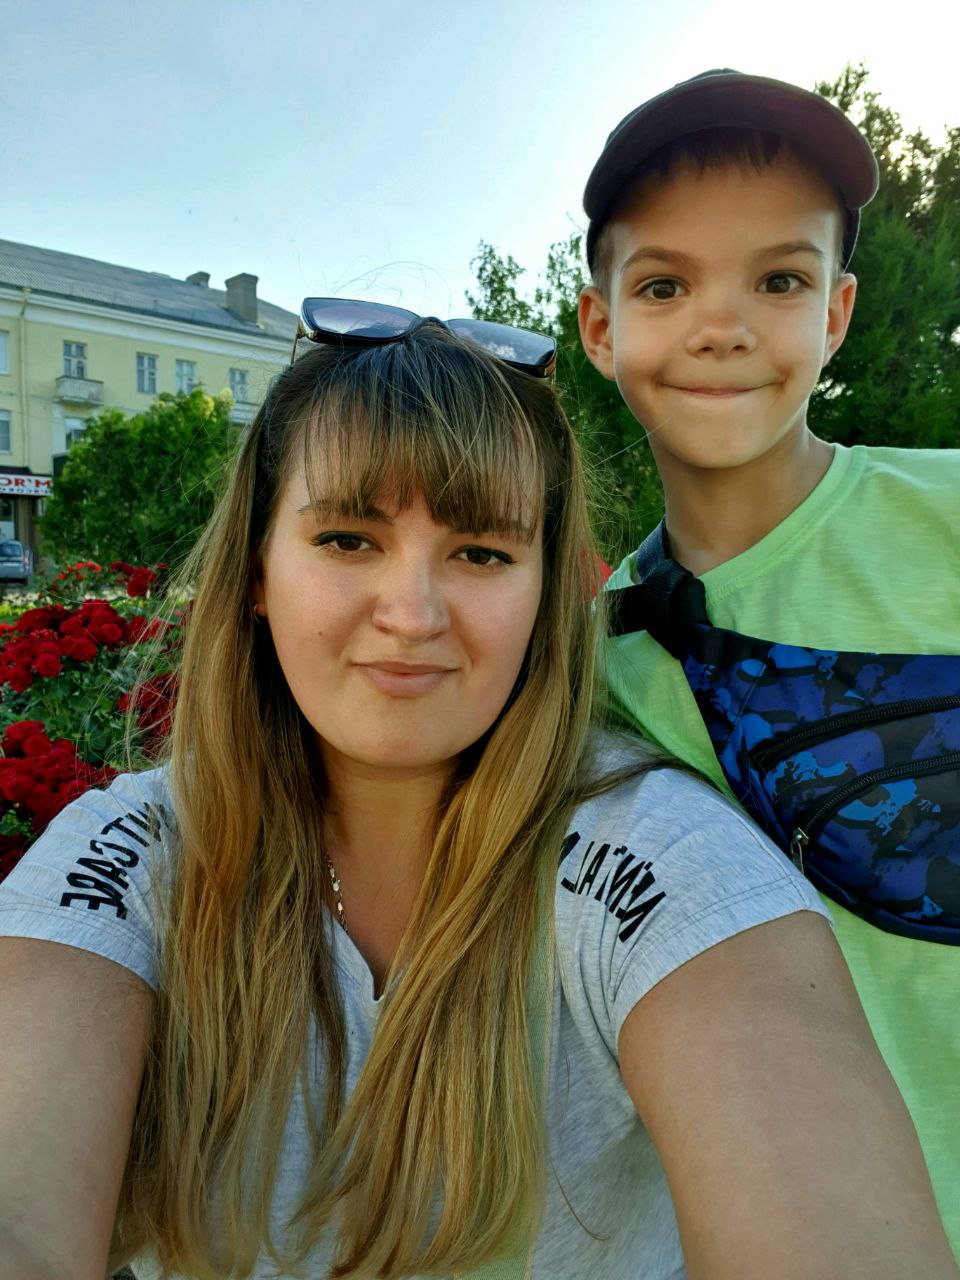 “Сын хочет стать военным, а я боюсь об этом и думать”: украинская защитница — о своем опыте материнства на расстоянии 1